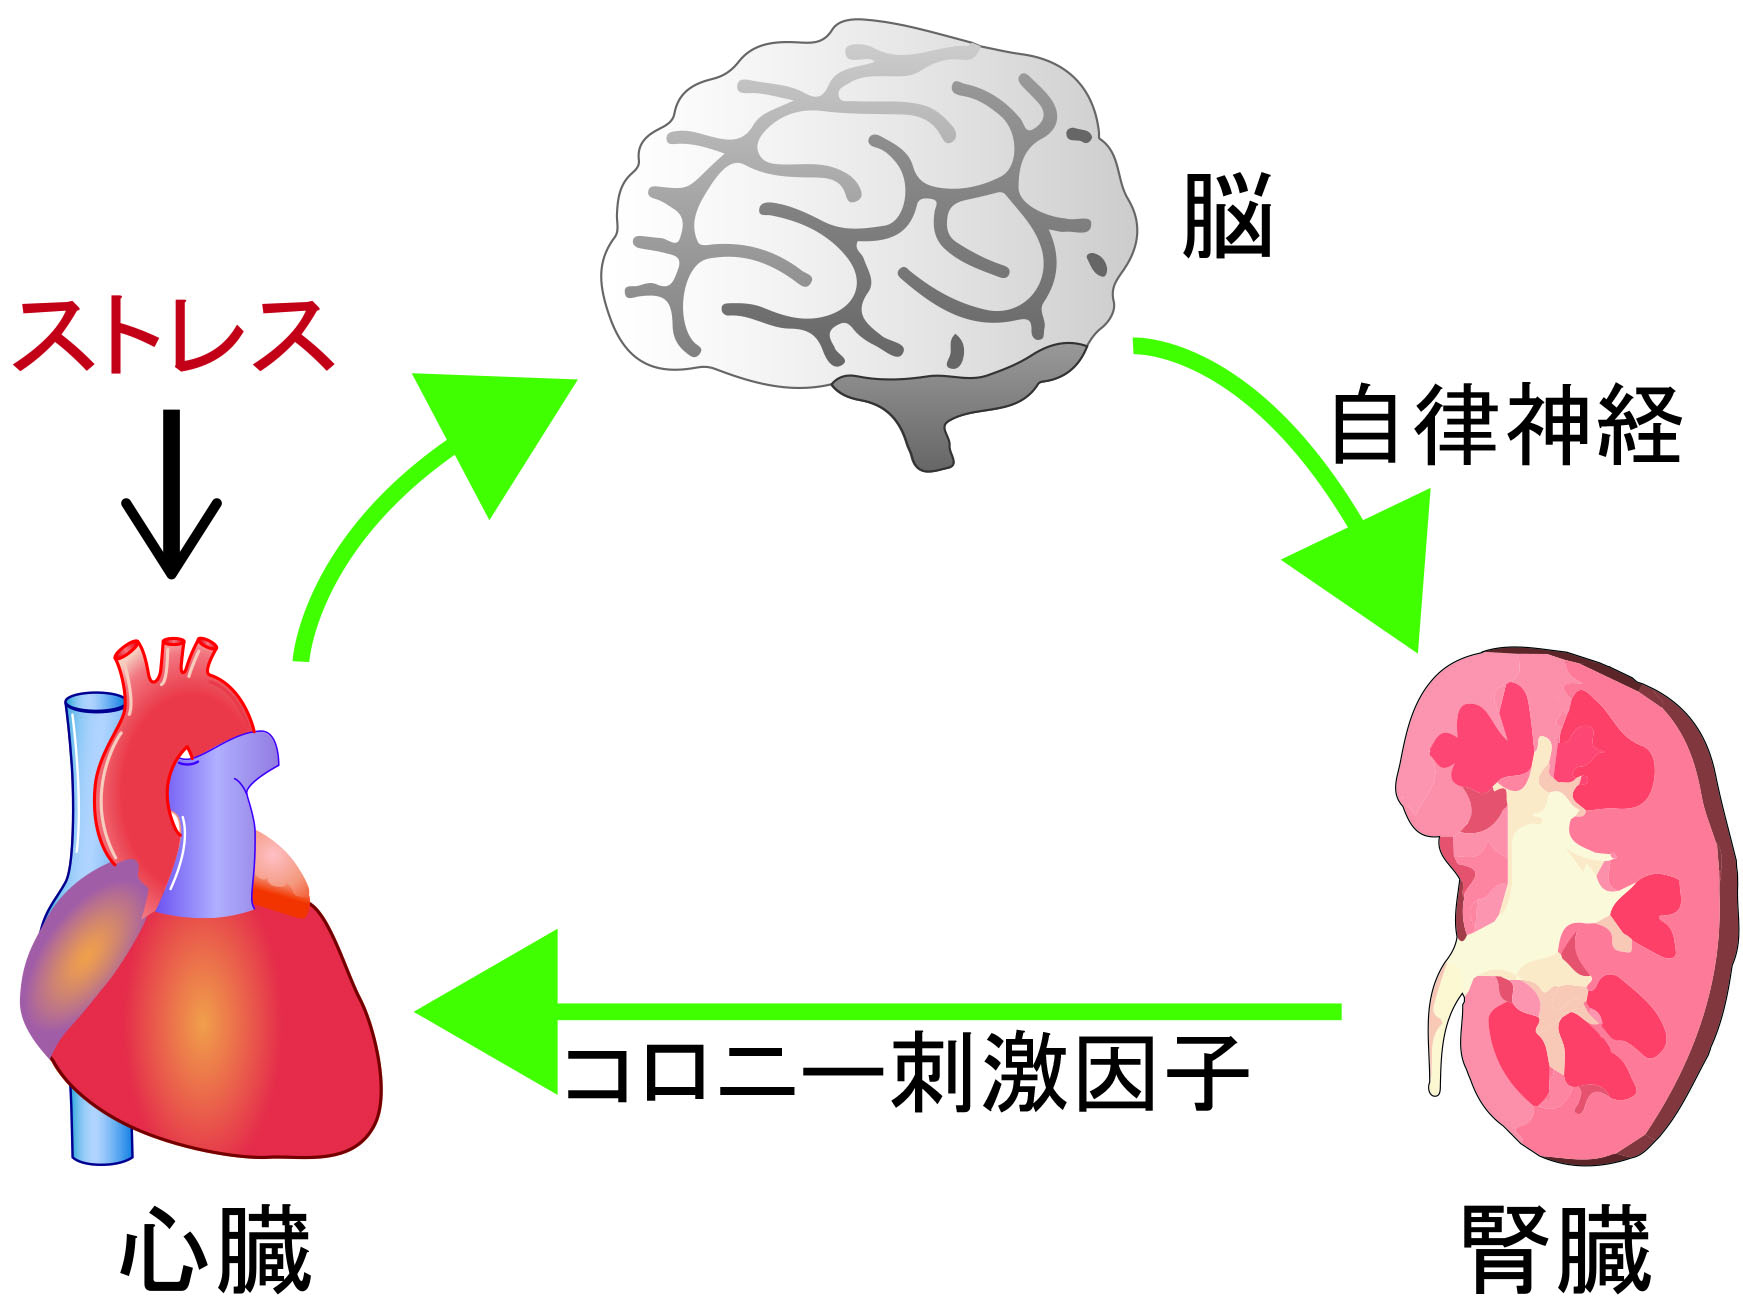 __心臓−脳−腎臓が連携して心臓ストレスを適切に処理する__